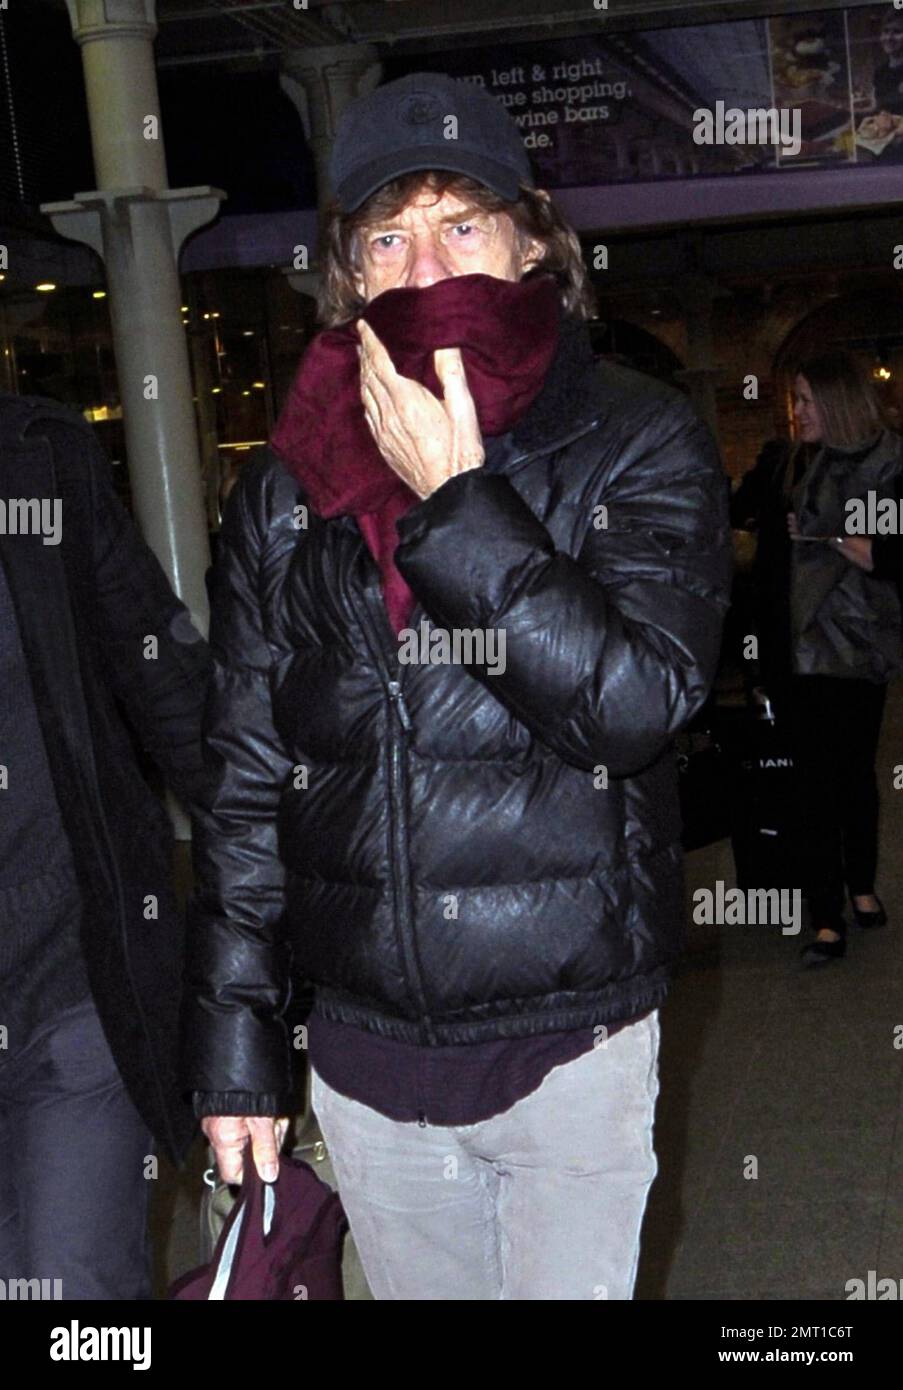 Rolling Stones ROCKER Mick Jagger si copre con una sciarpa dopo l'arrivo da Parigi sull'Eurostar. Londra, Regno Unito. 7th dicembre 2011. Foto Stock